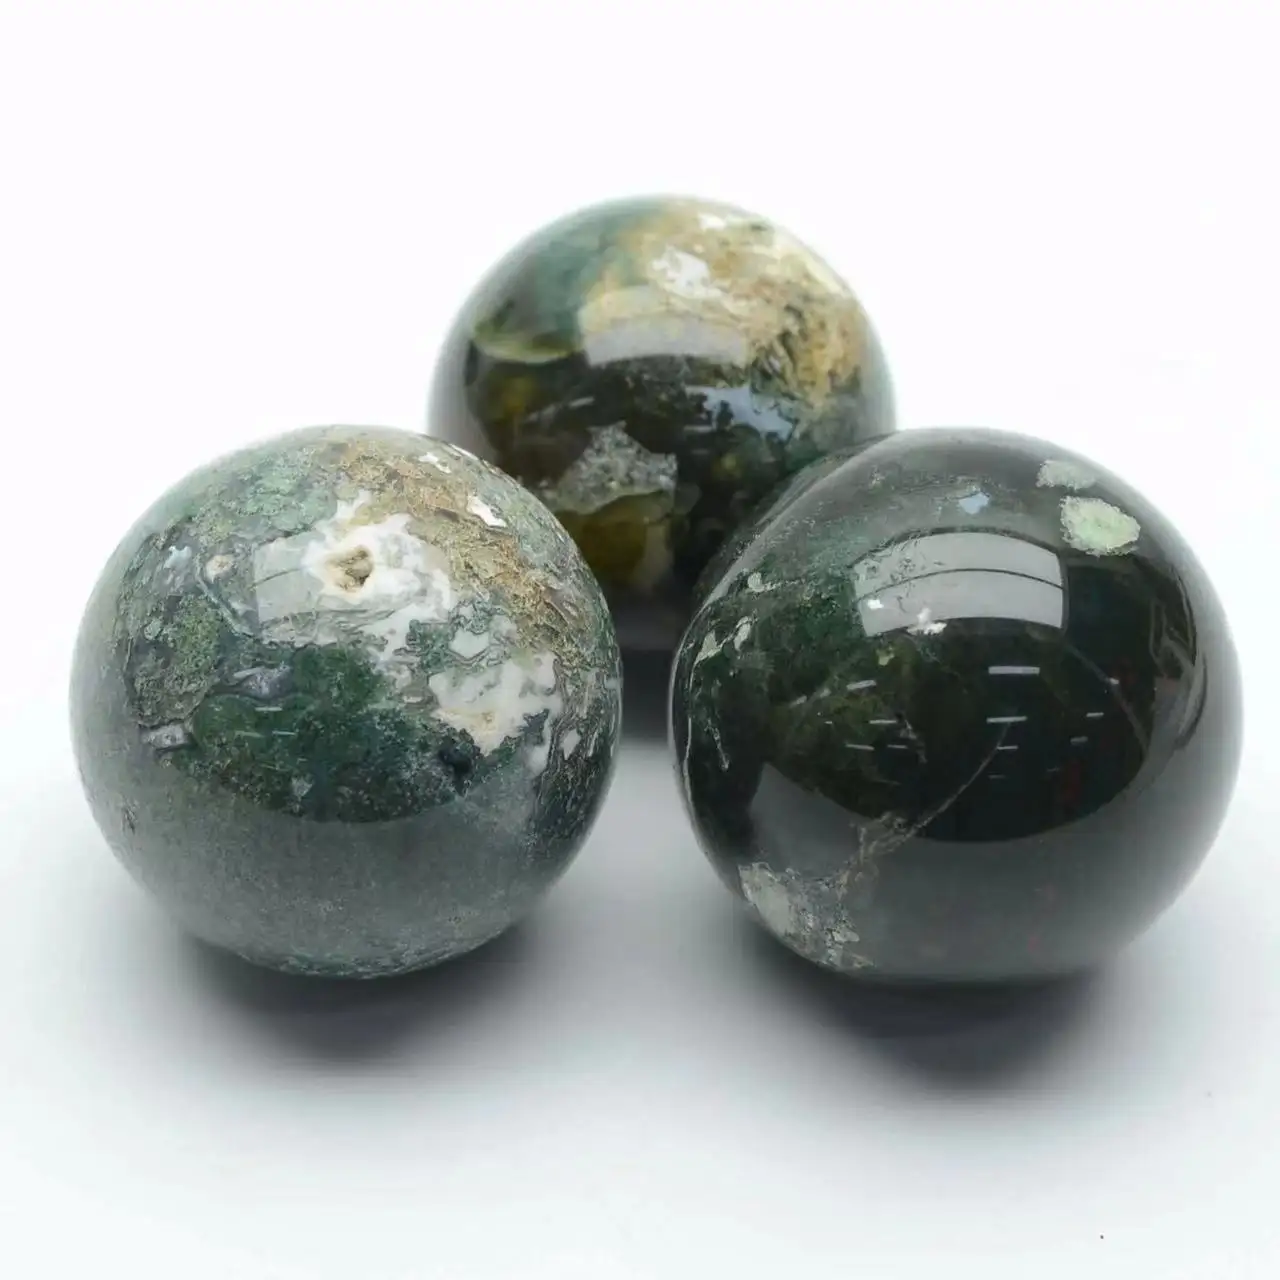 Vente en gros de pierre naturelle cristal pierre précieuse cristal artisanat de haute qualité drusy mousse agate sphère de cristal pour la décoration intérieure